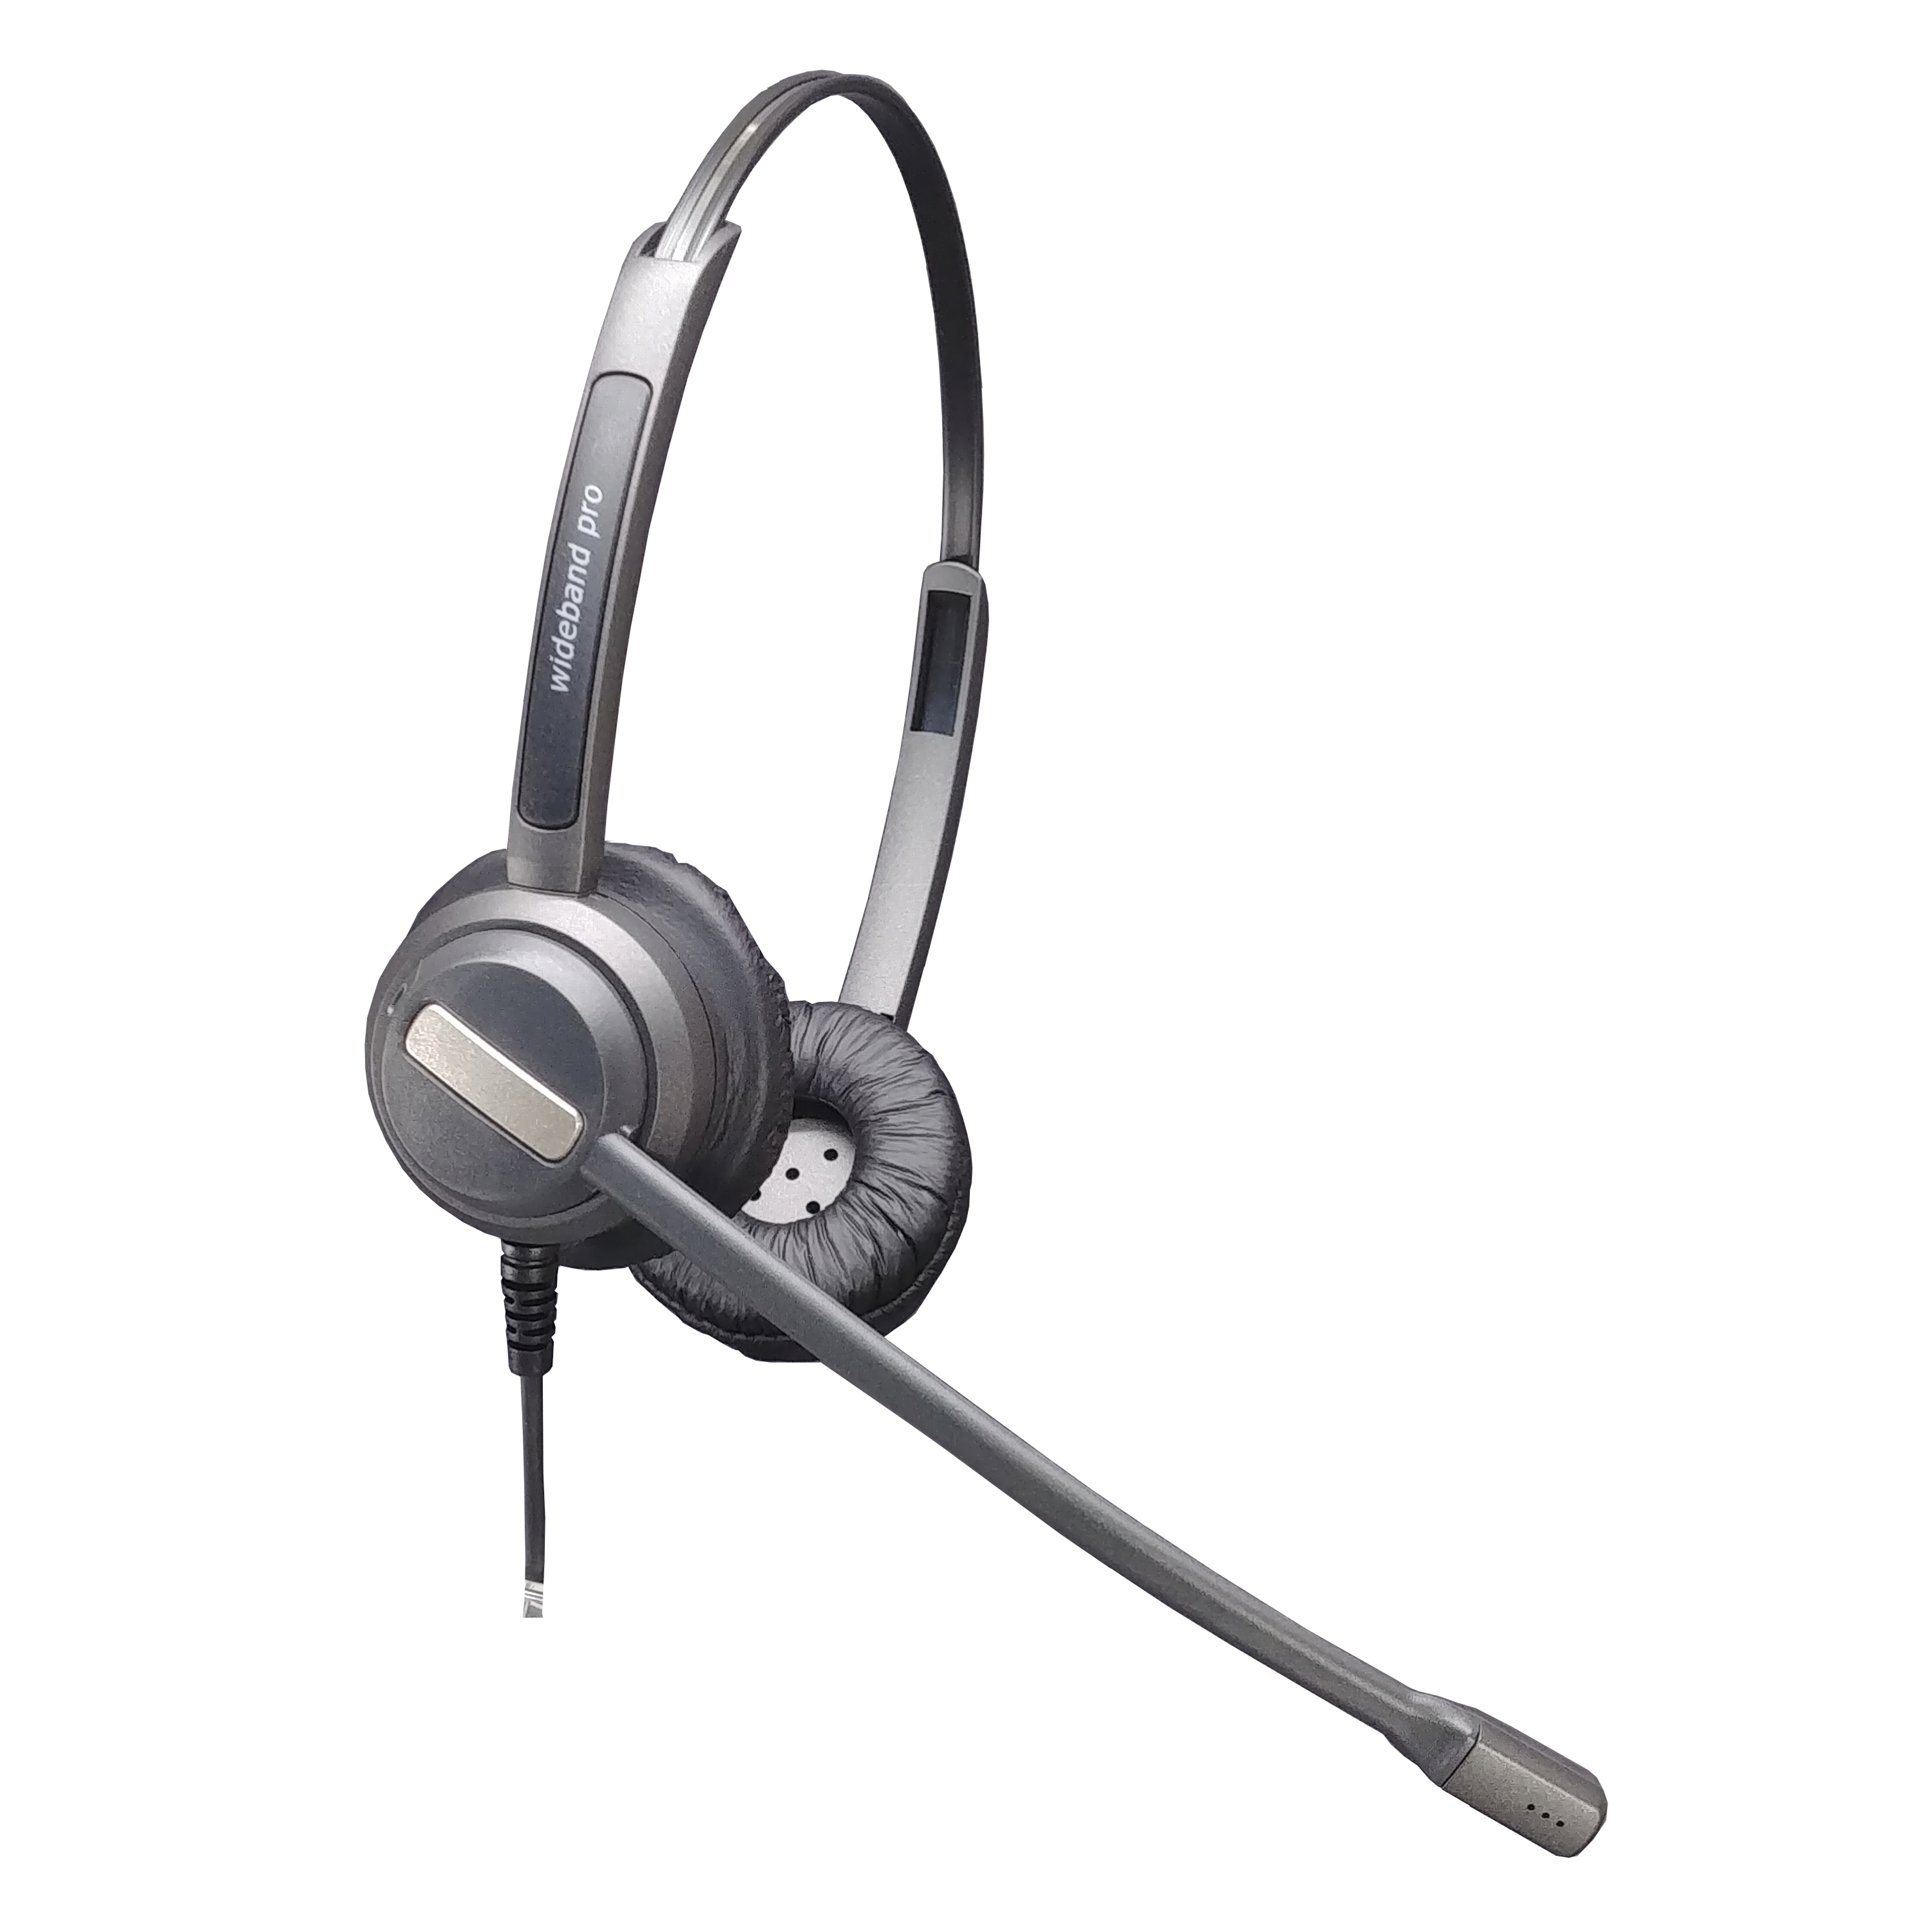 라인텍-LINE TECH, Wideband Headset, Earset, Neimer, Coil Cord